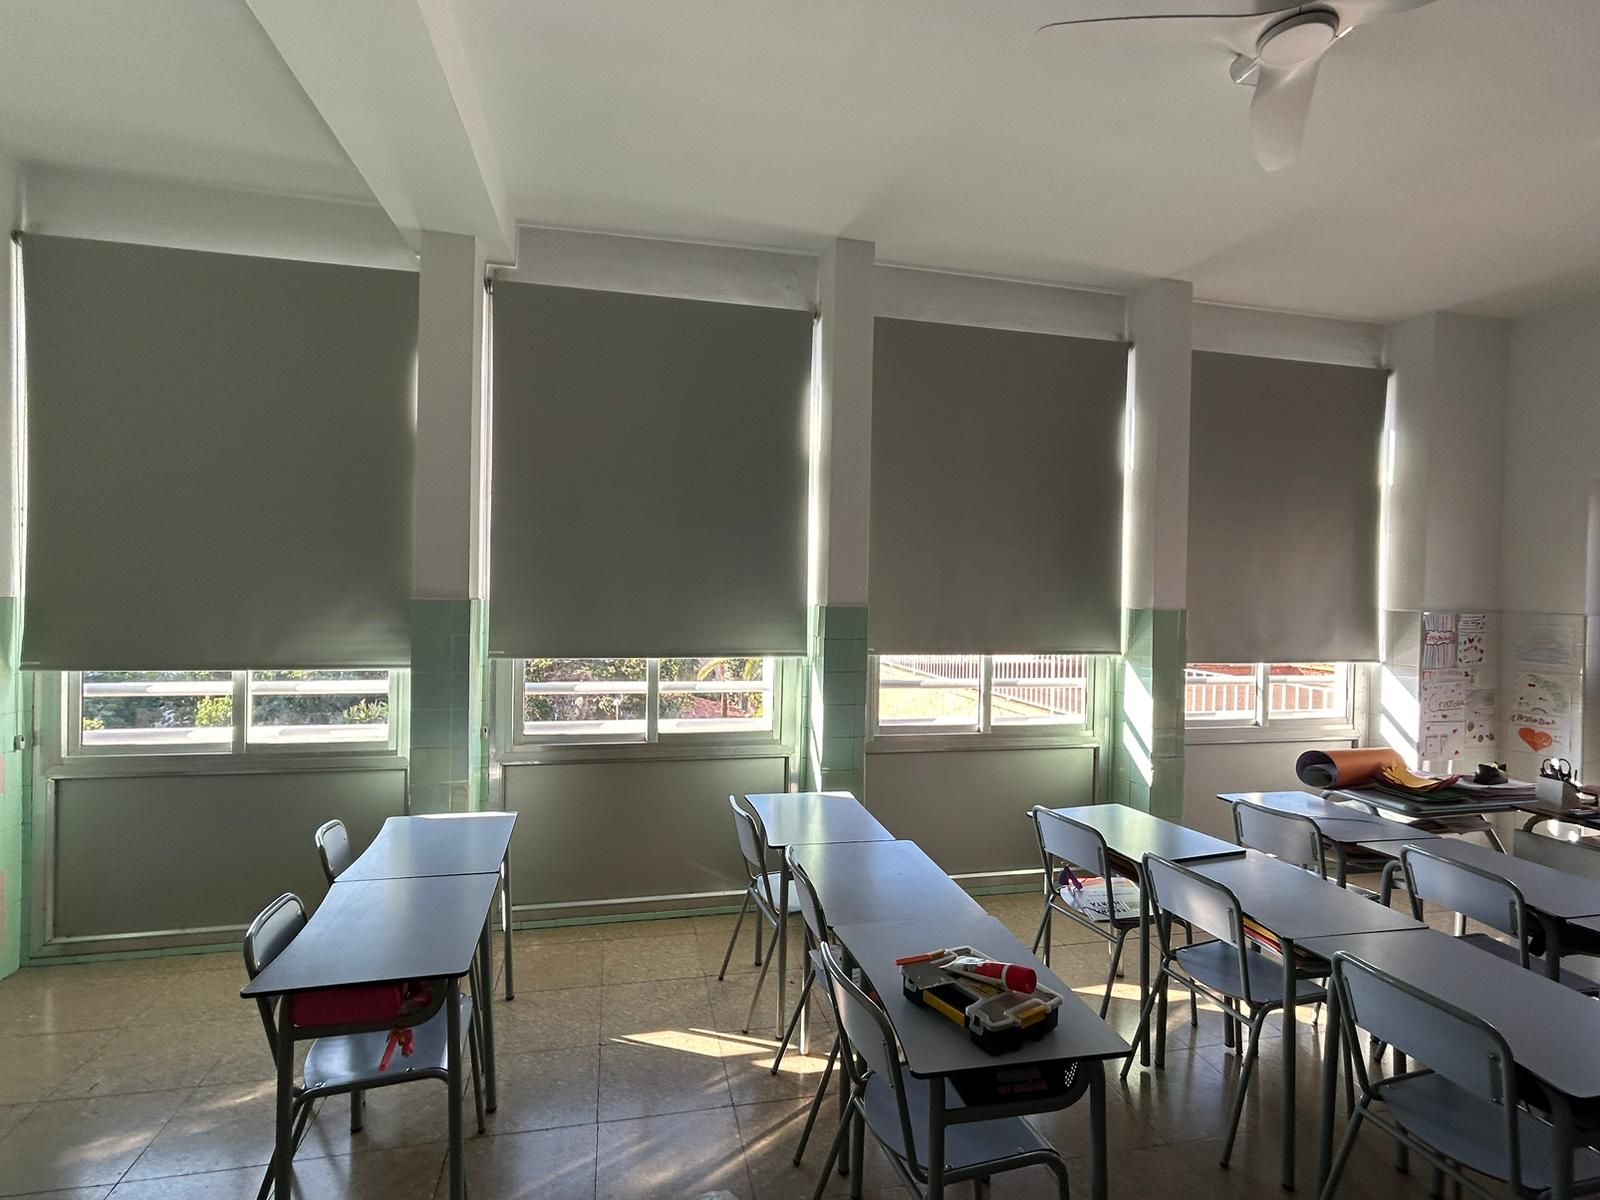 Instalación de cortinas enrollables con tejido opaco, referencia Opac400 y color Perla, en colegio de Barcelona